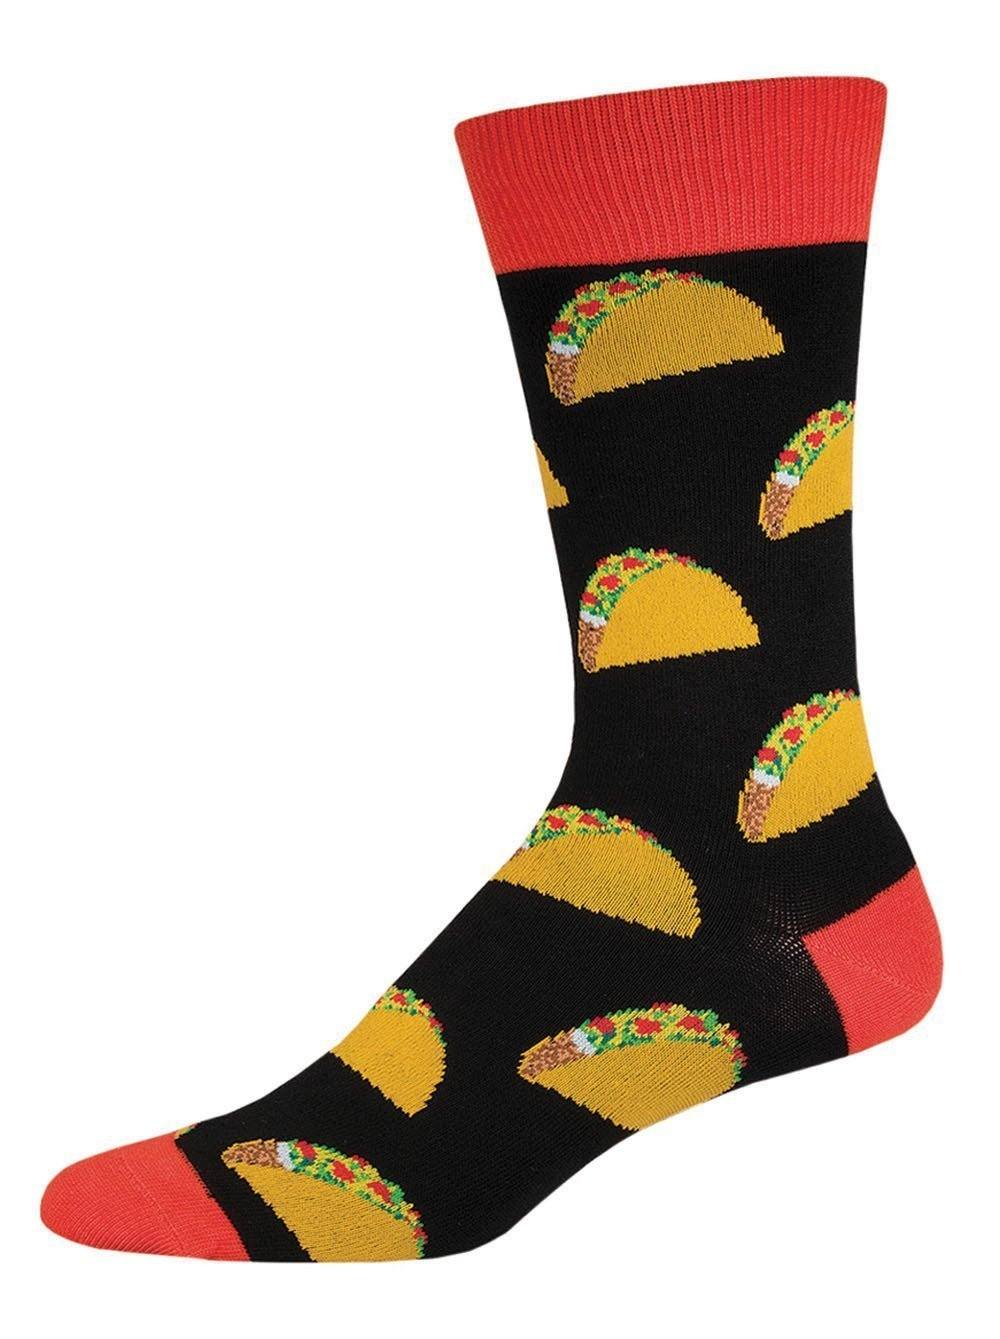 Socksmith - Tacos Crew Socks | Men's - Knock Your Socks Off